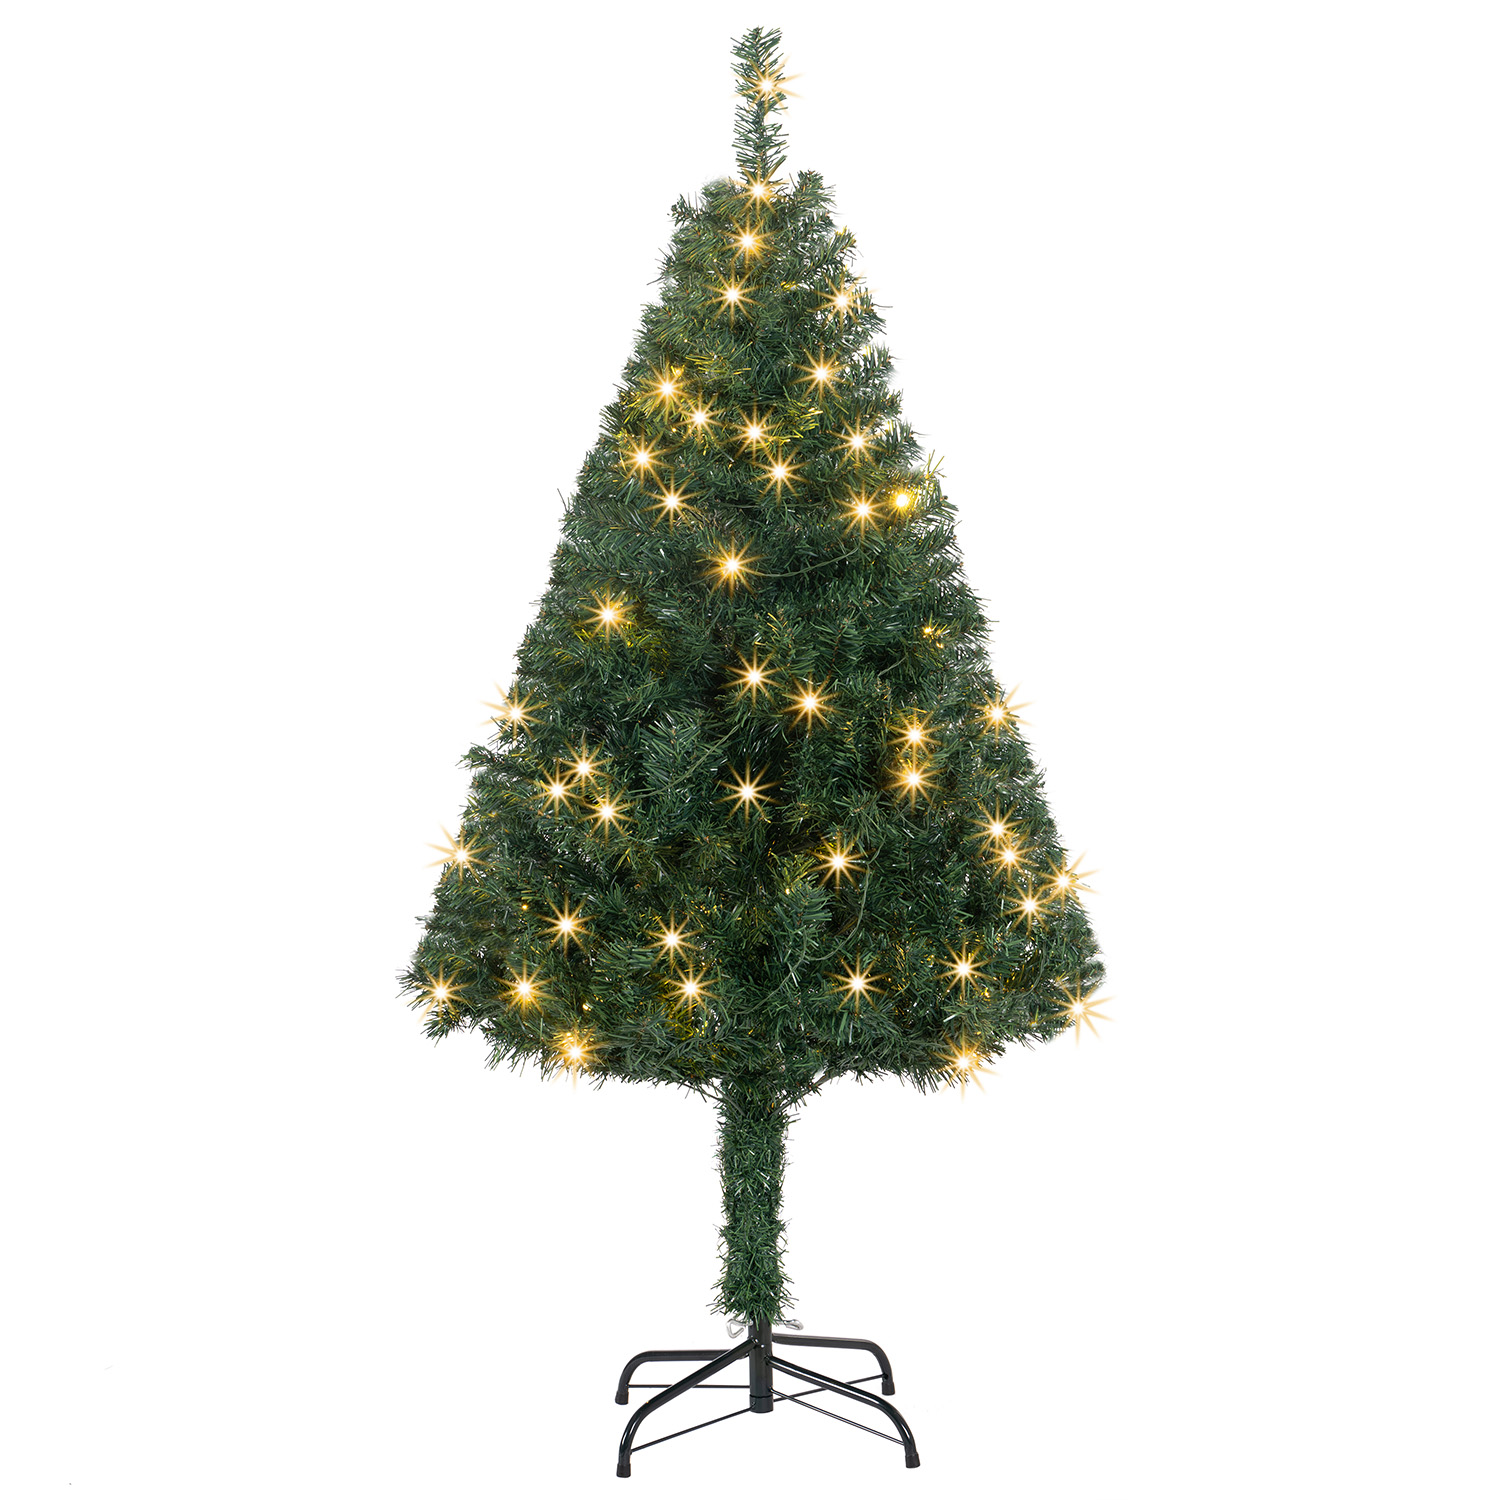 Juskys Umelý vianočný stromček s LED sviečkami - 150 cm